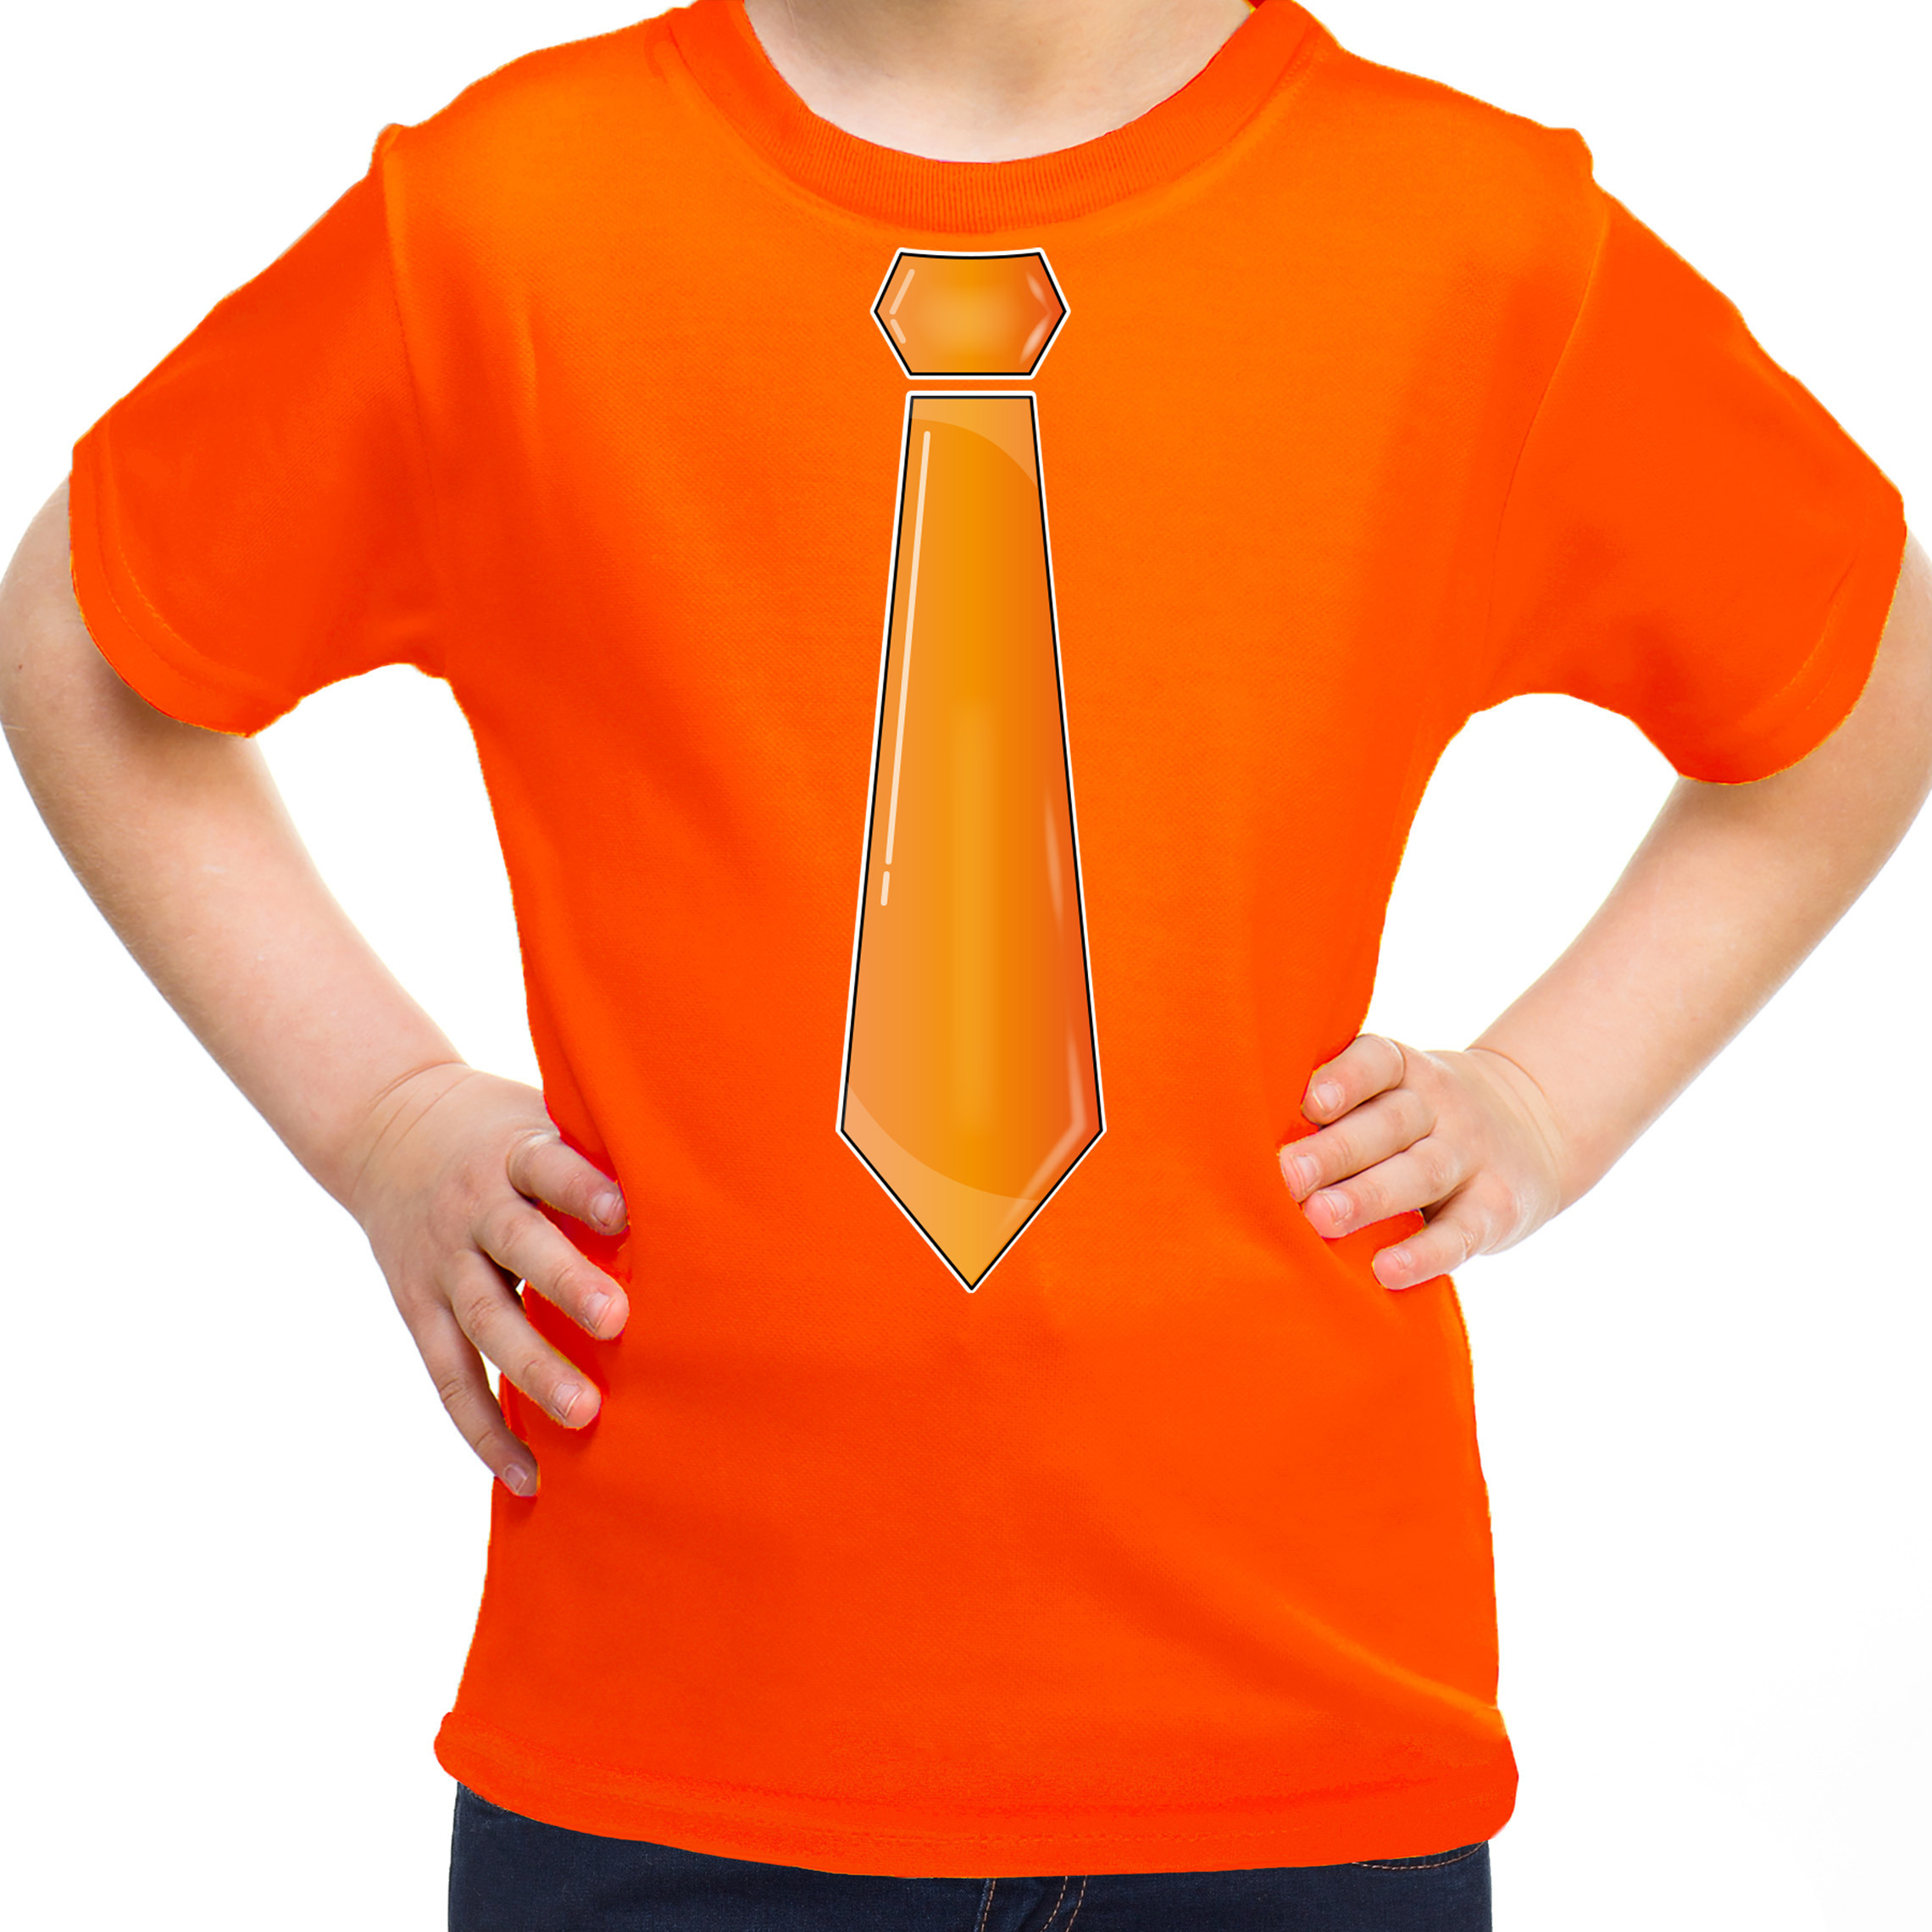 Verkleed t-shirt voor kinderen stropdas oranje meisje carnaval-themafeest kostuum